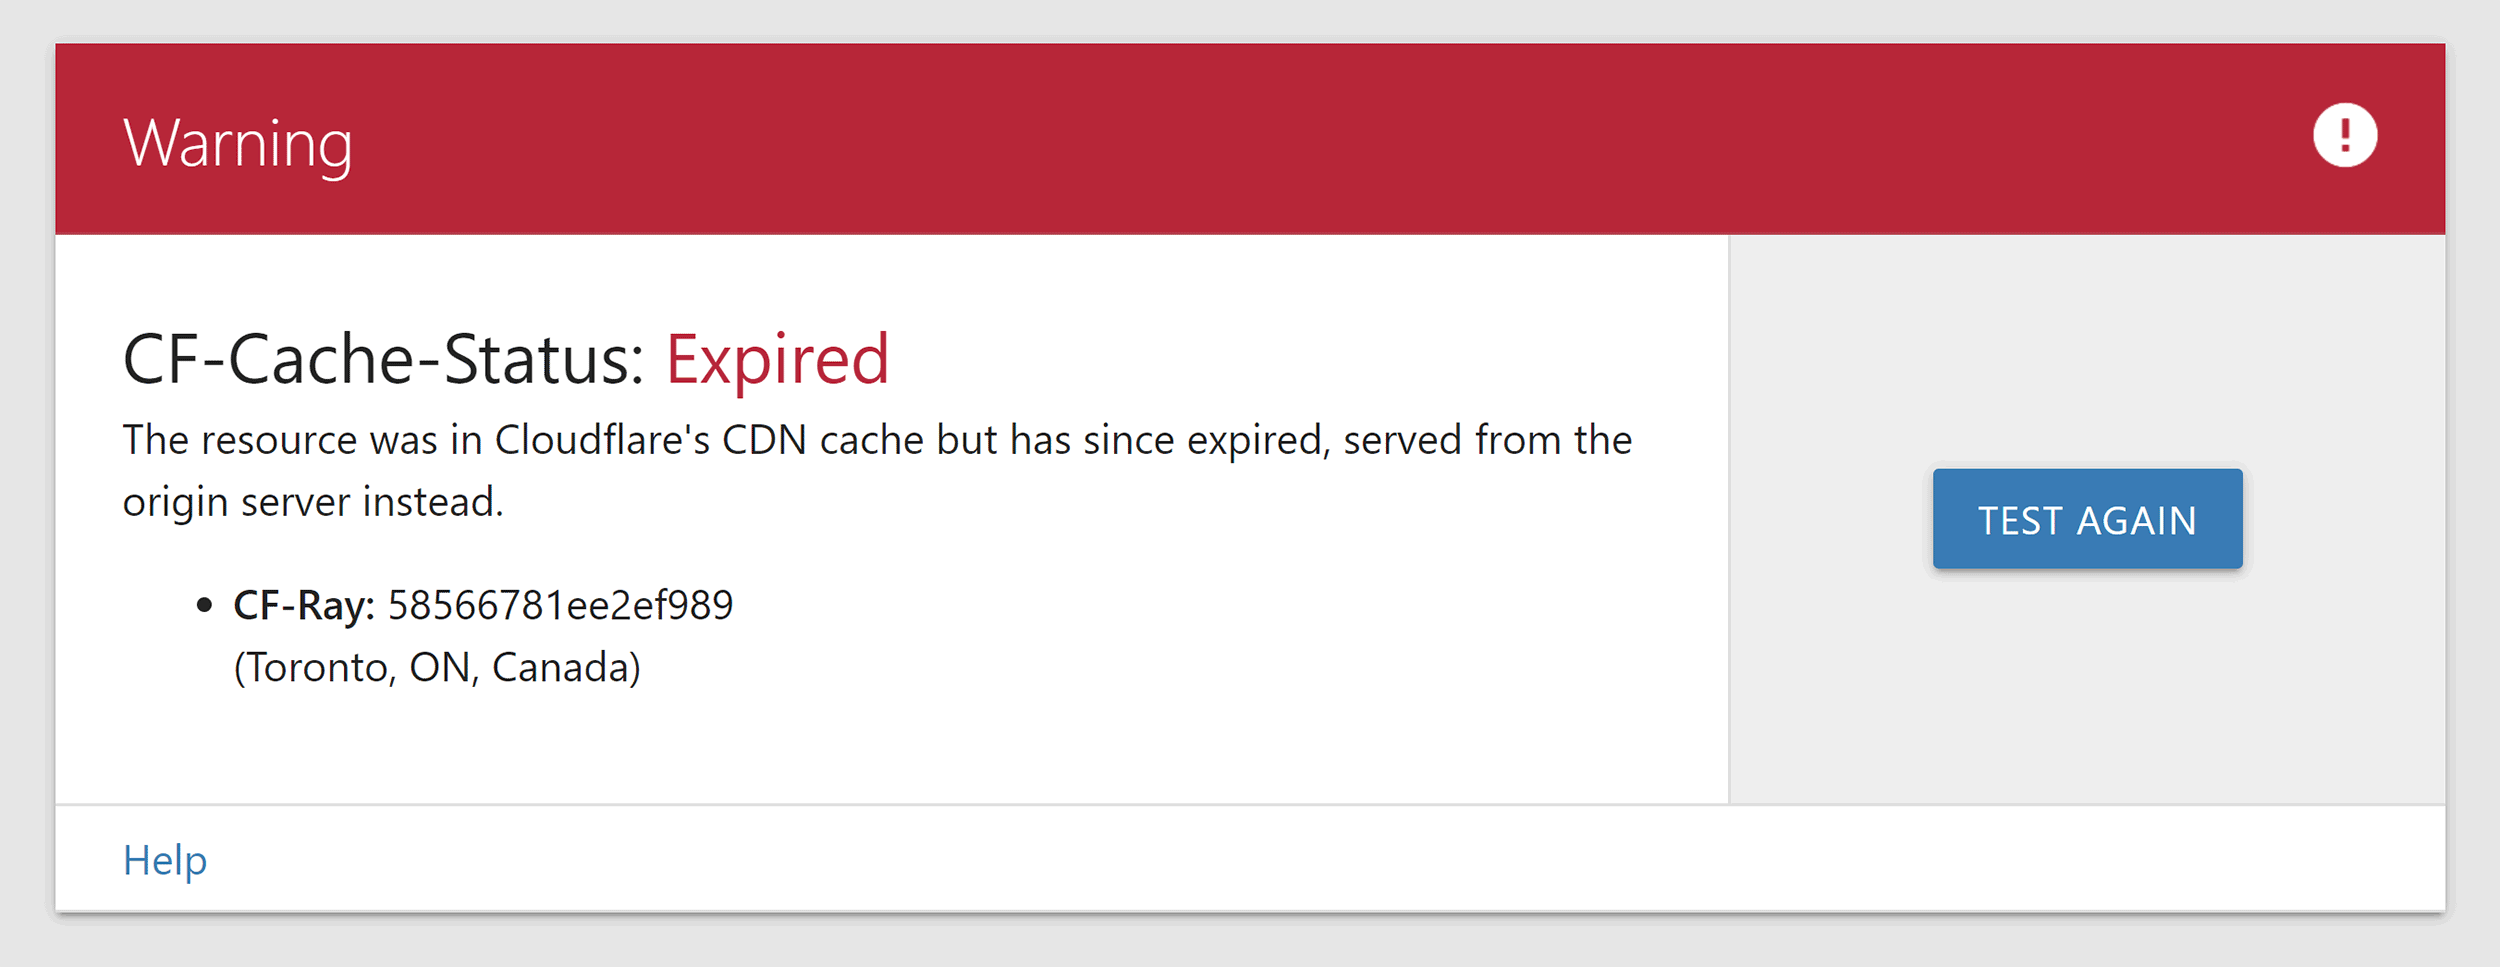 CF-Cache-Status - Expired